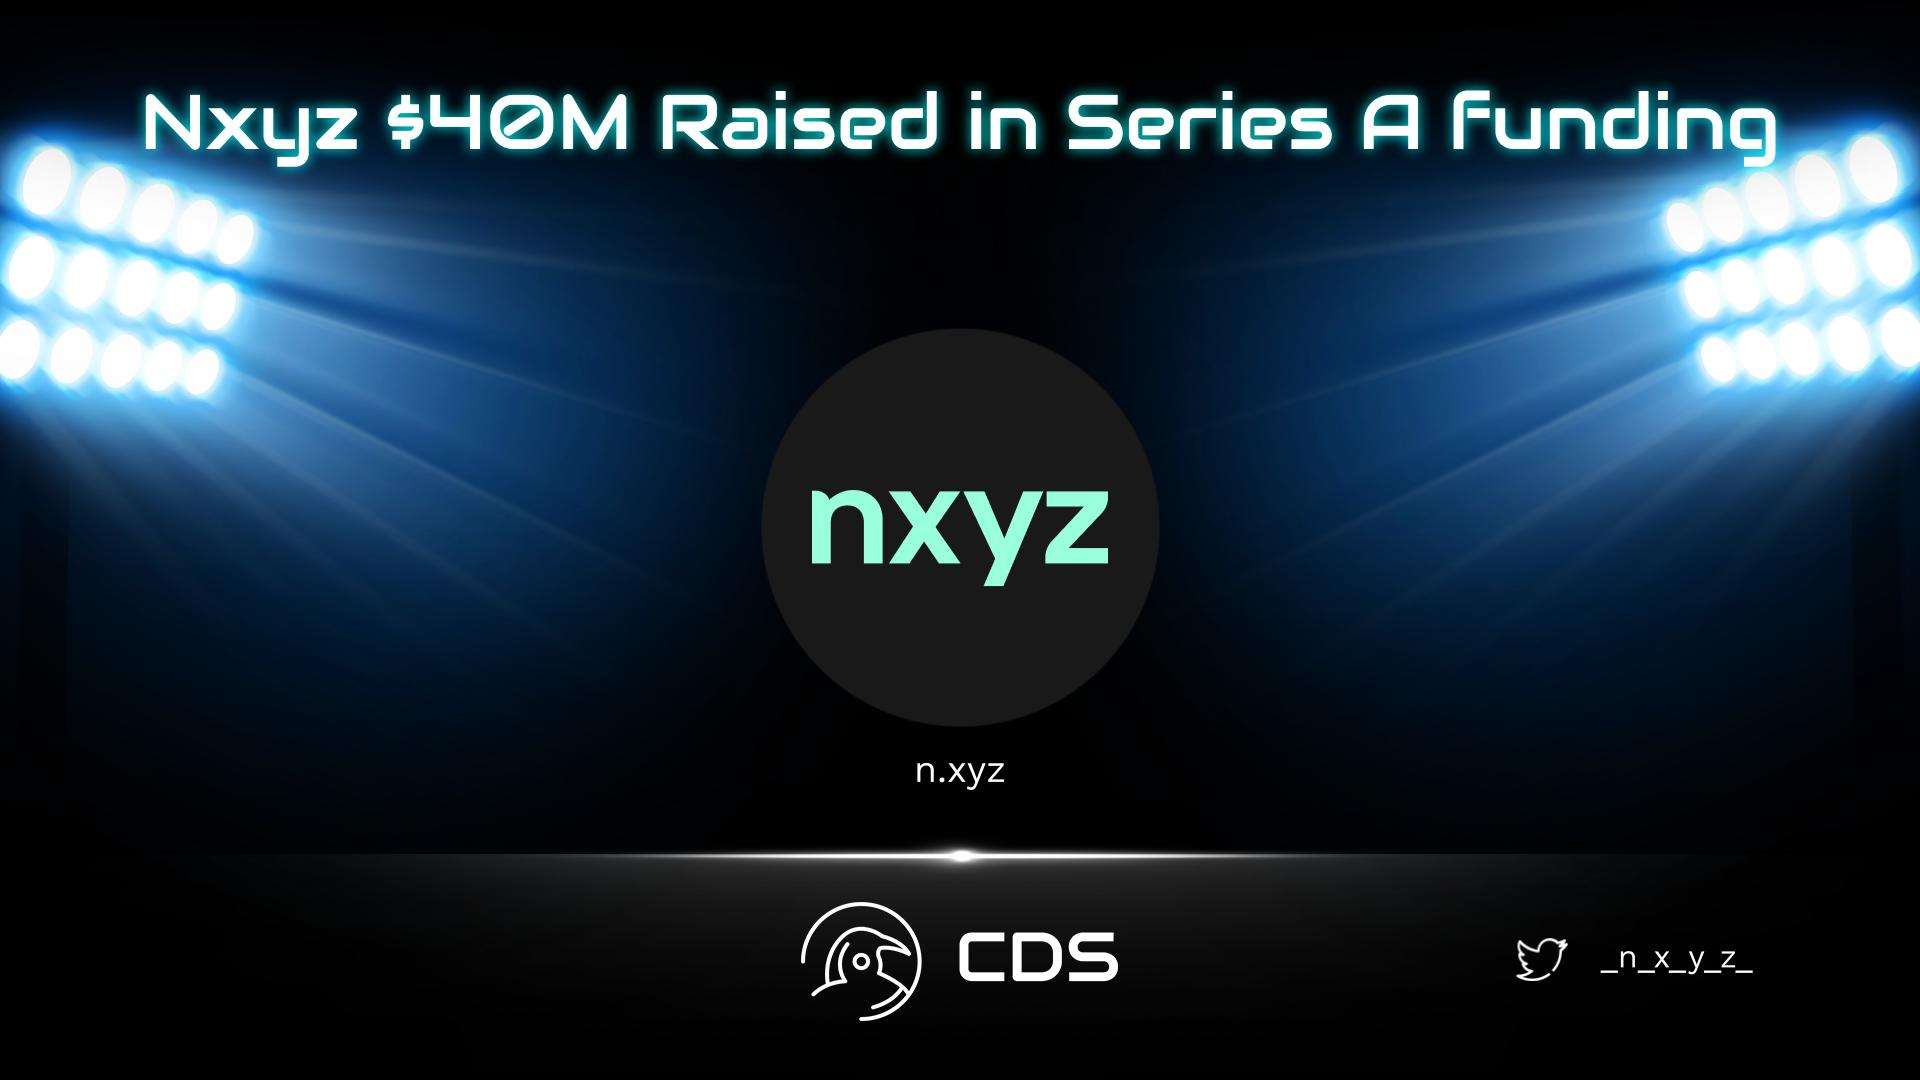 Nxyz $40M Raised in Series A funding